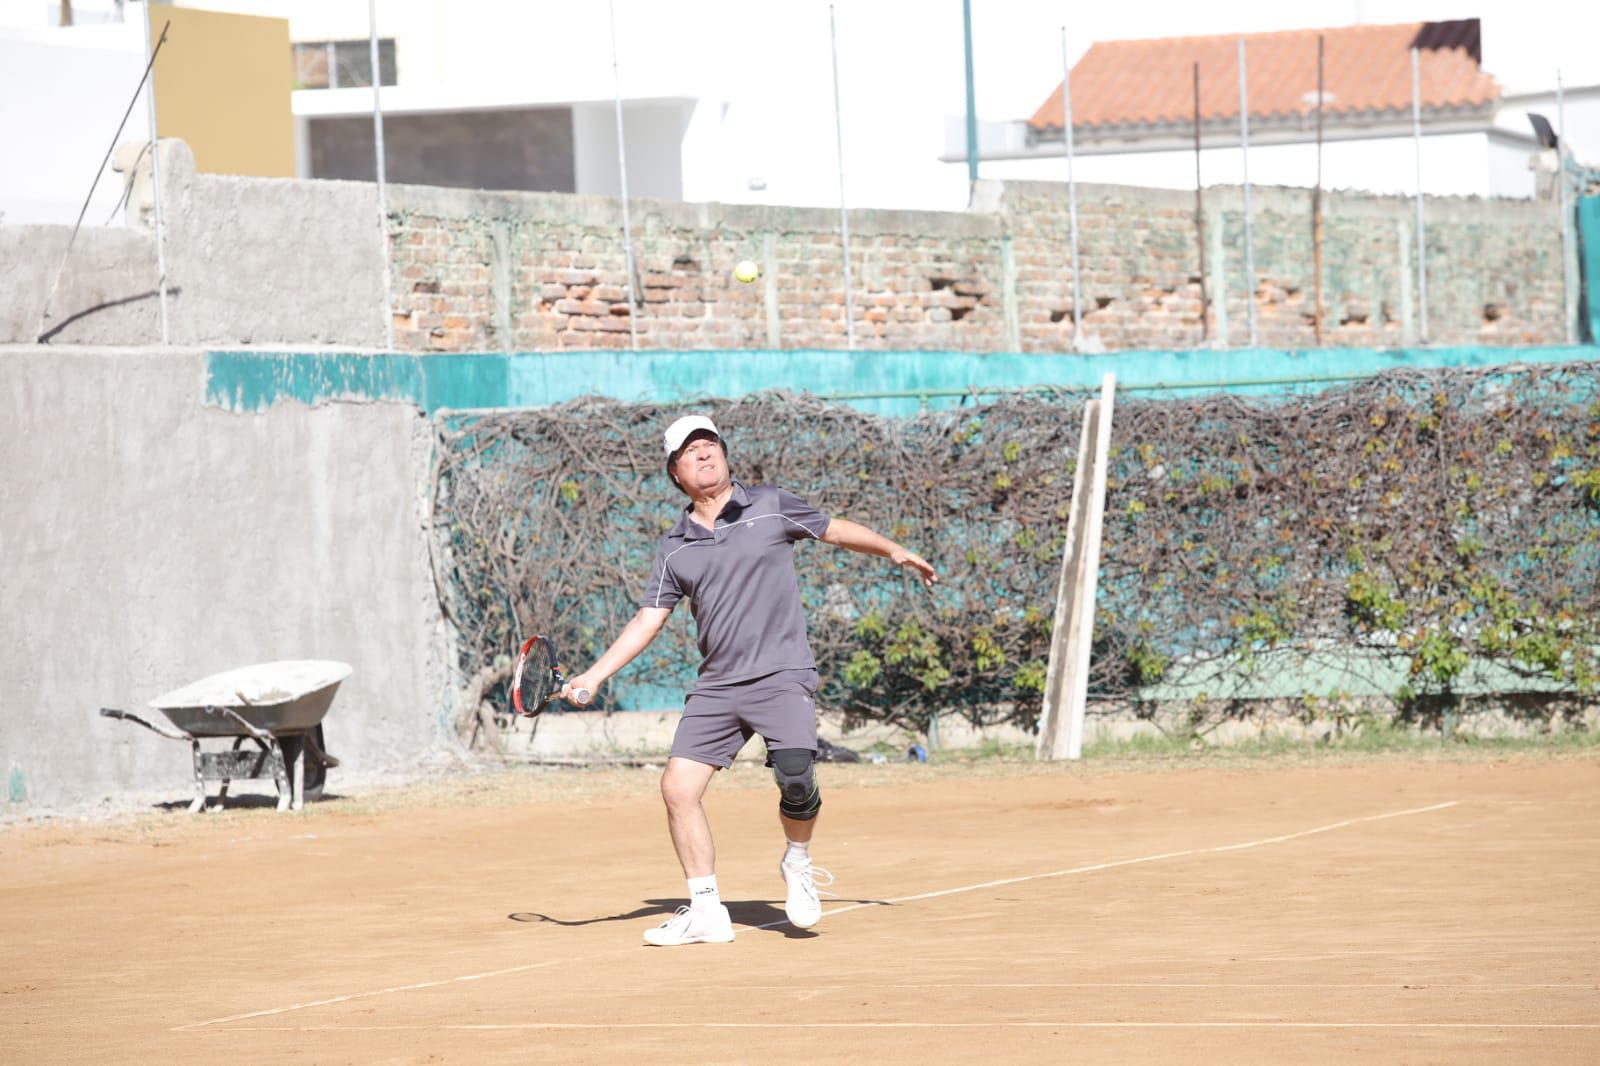 $!Suman Herrera y Villasana su segundo triunfo en la Copa Carnaval de Tenis Racquet Club Las Gaviotas